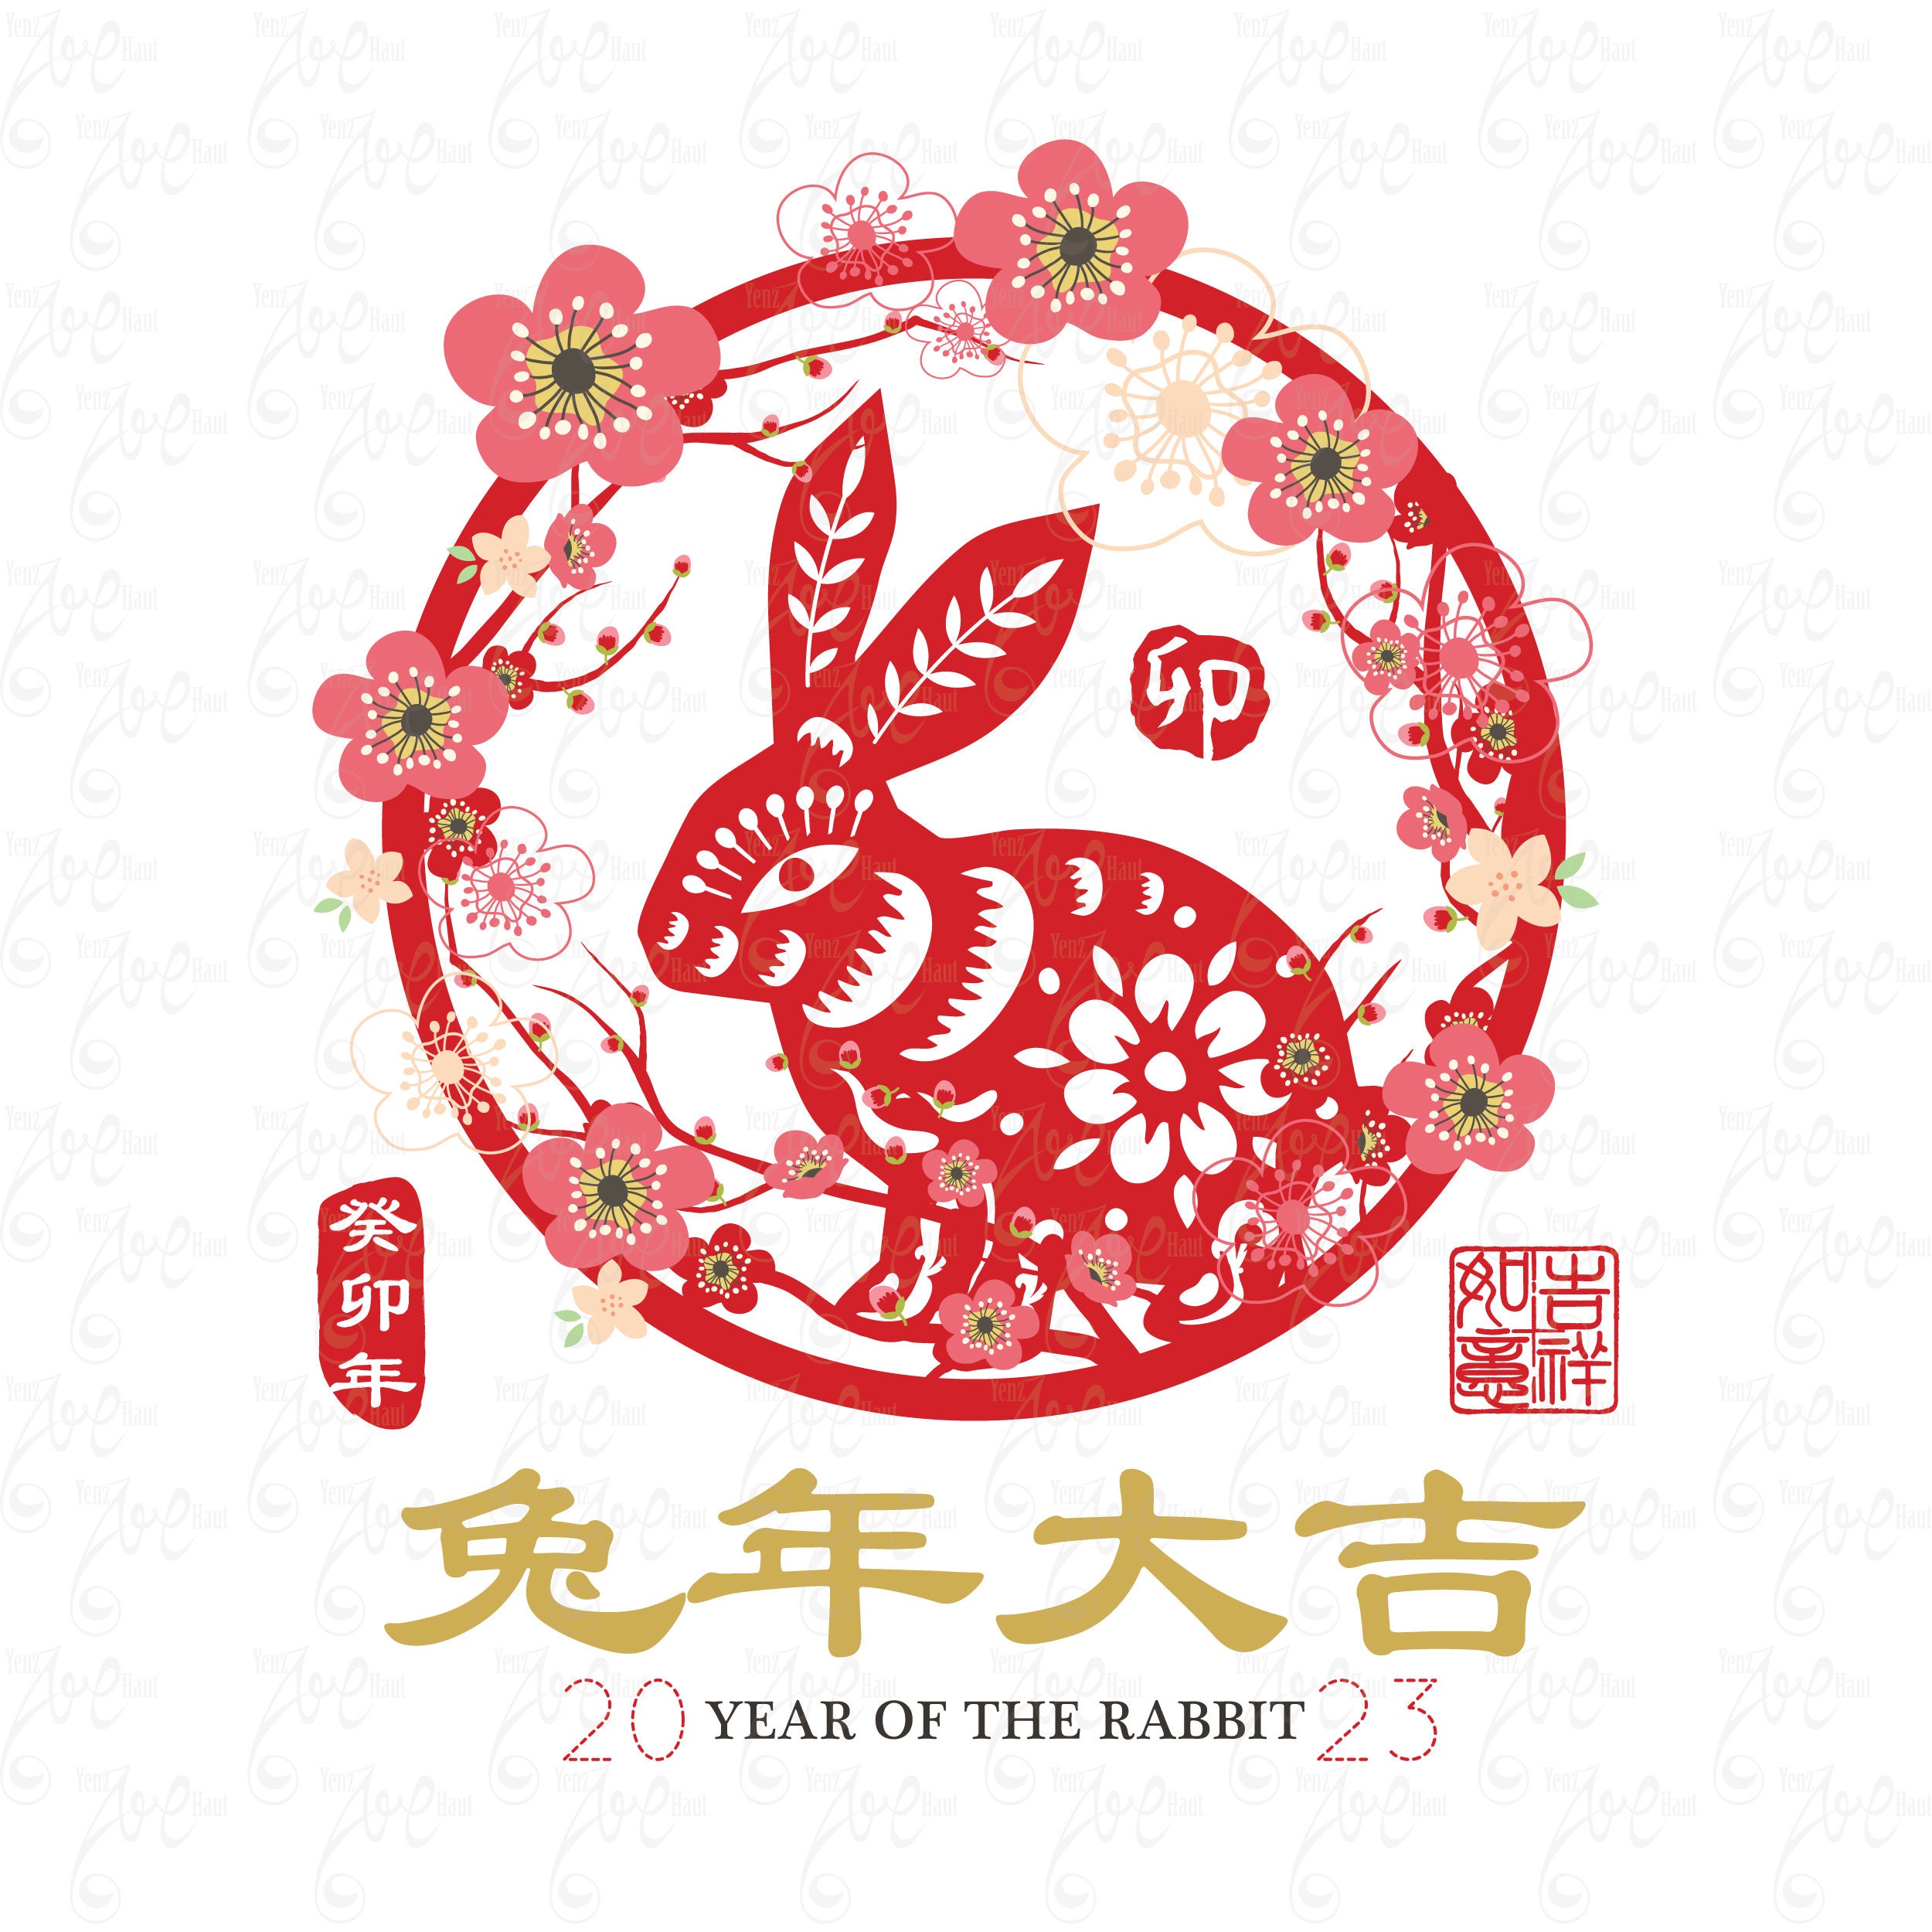 chinese new year 2023 rabbit